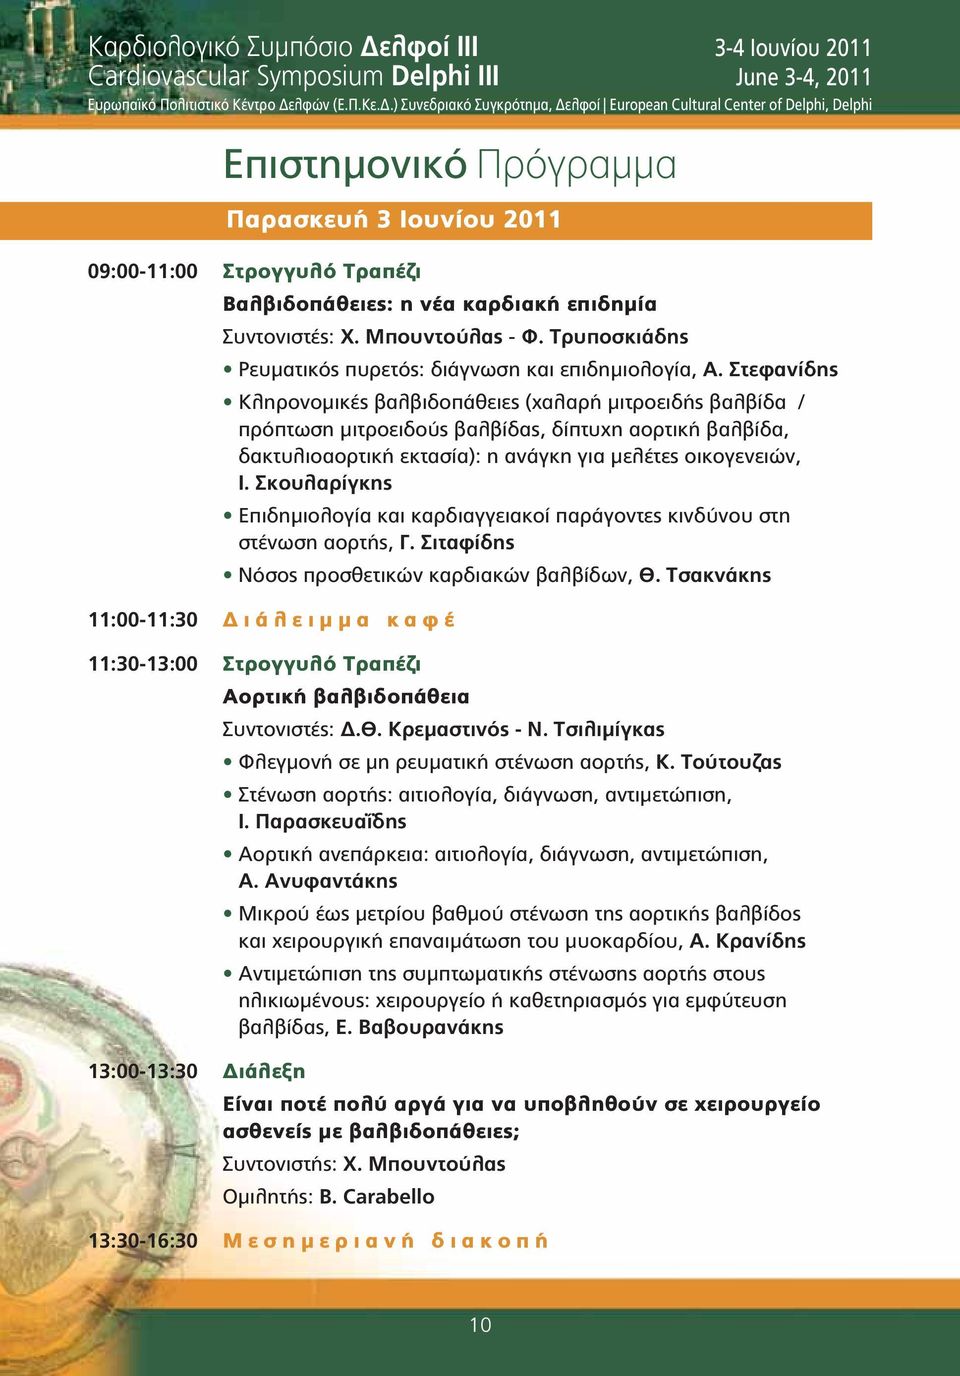 λφών (Ε.Π.Κε.Δ.) Συνεδριακό Συγκρότημα, Δελφοί European Cultural Center of Delphi, Delphi Επιστημονικό Πρόγραμμα 09:00-11:00 Στρογγυλό Τραπέζι Βαλβιδοπάθειες: η νέα καρδιακή επιδημία Συντονιστές: Χ.